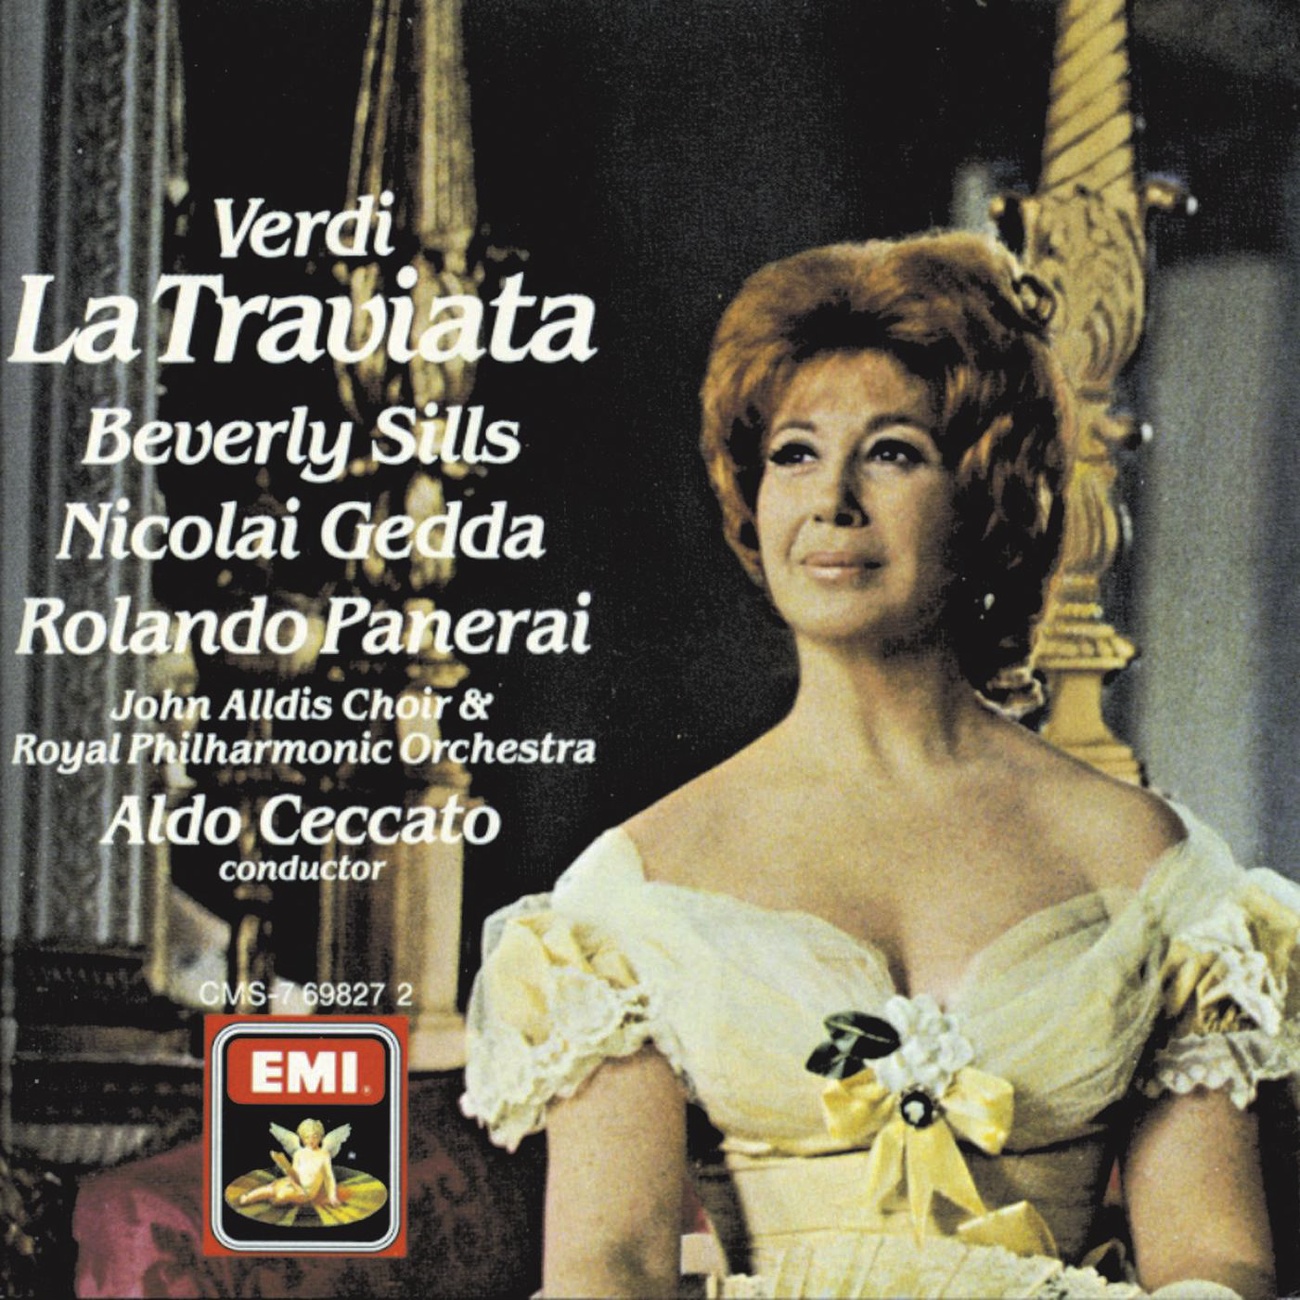 La Traviata (1988 Digital Remaster), Act II, Scene I: Non sapete quale affetto (Violetta)